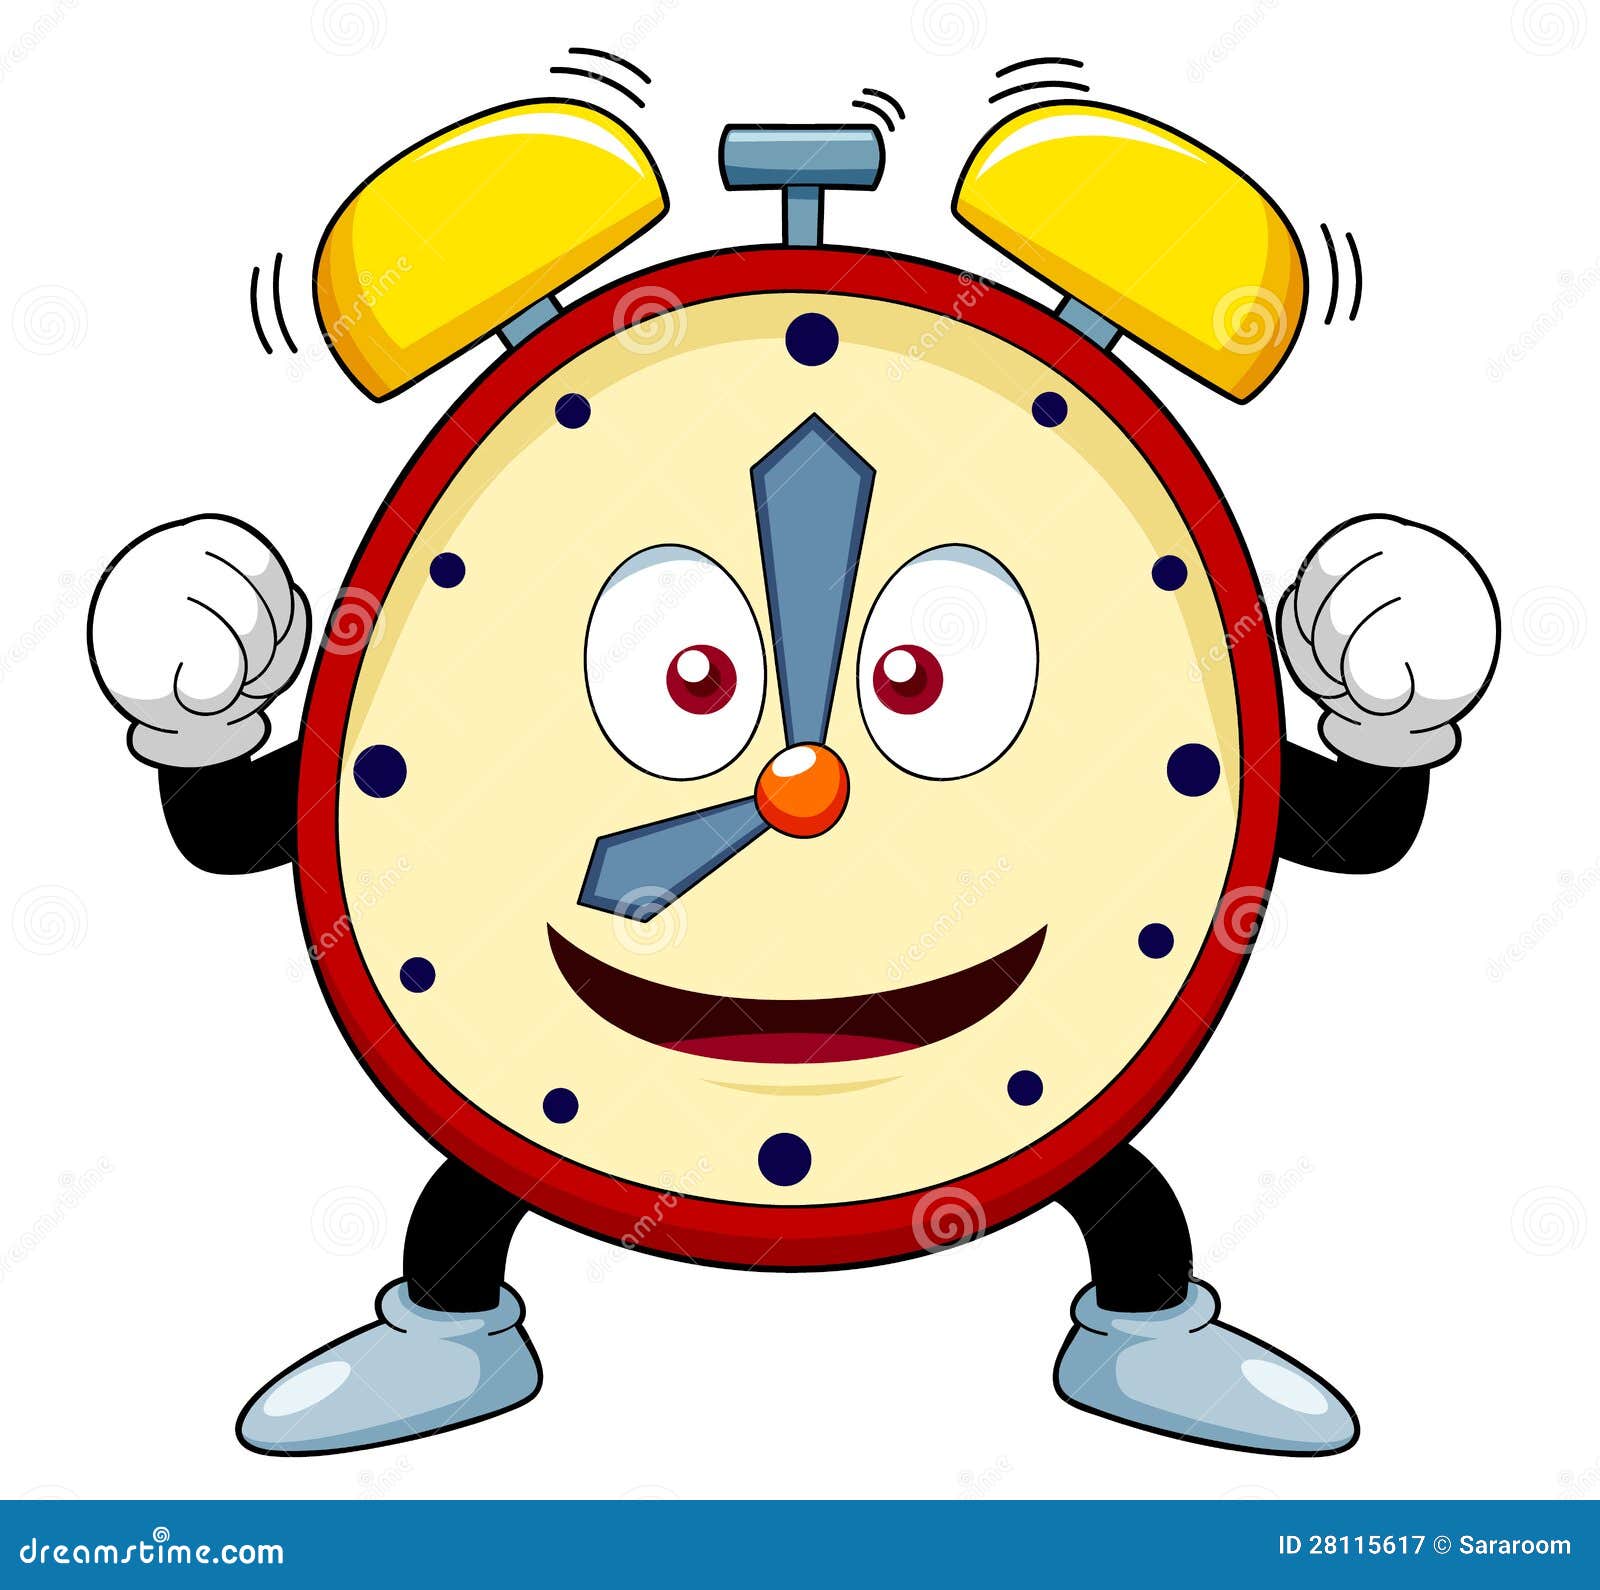 Cartoon alarm clock stock vector. Image of meter, bell ...